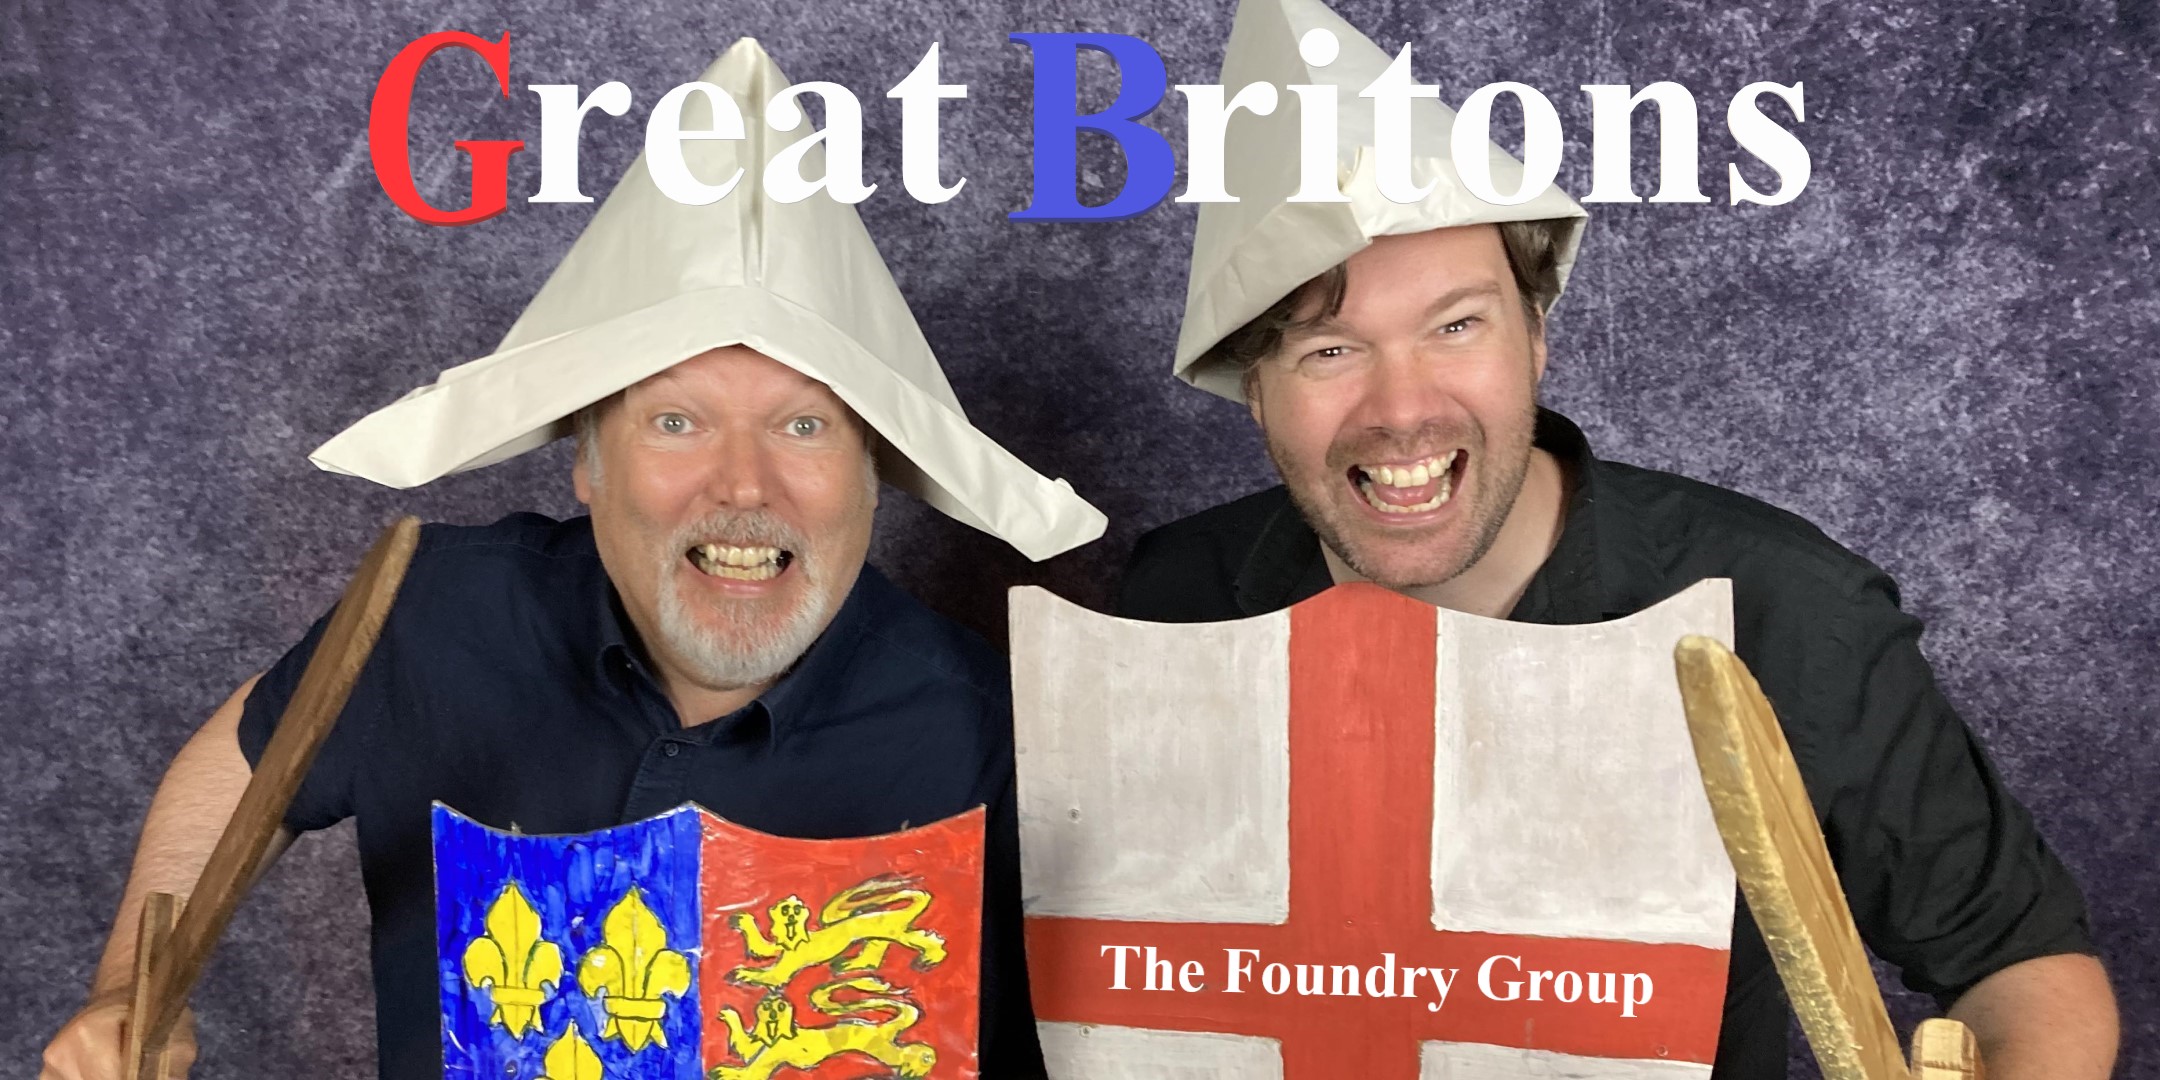 12th May- Great Britons